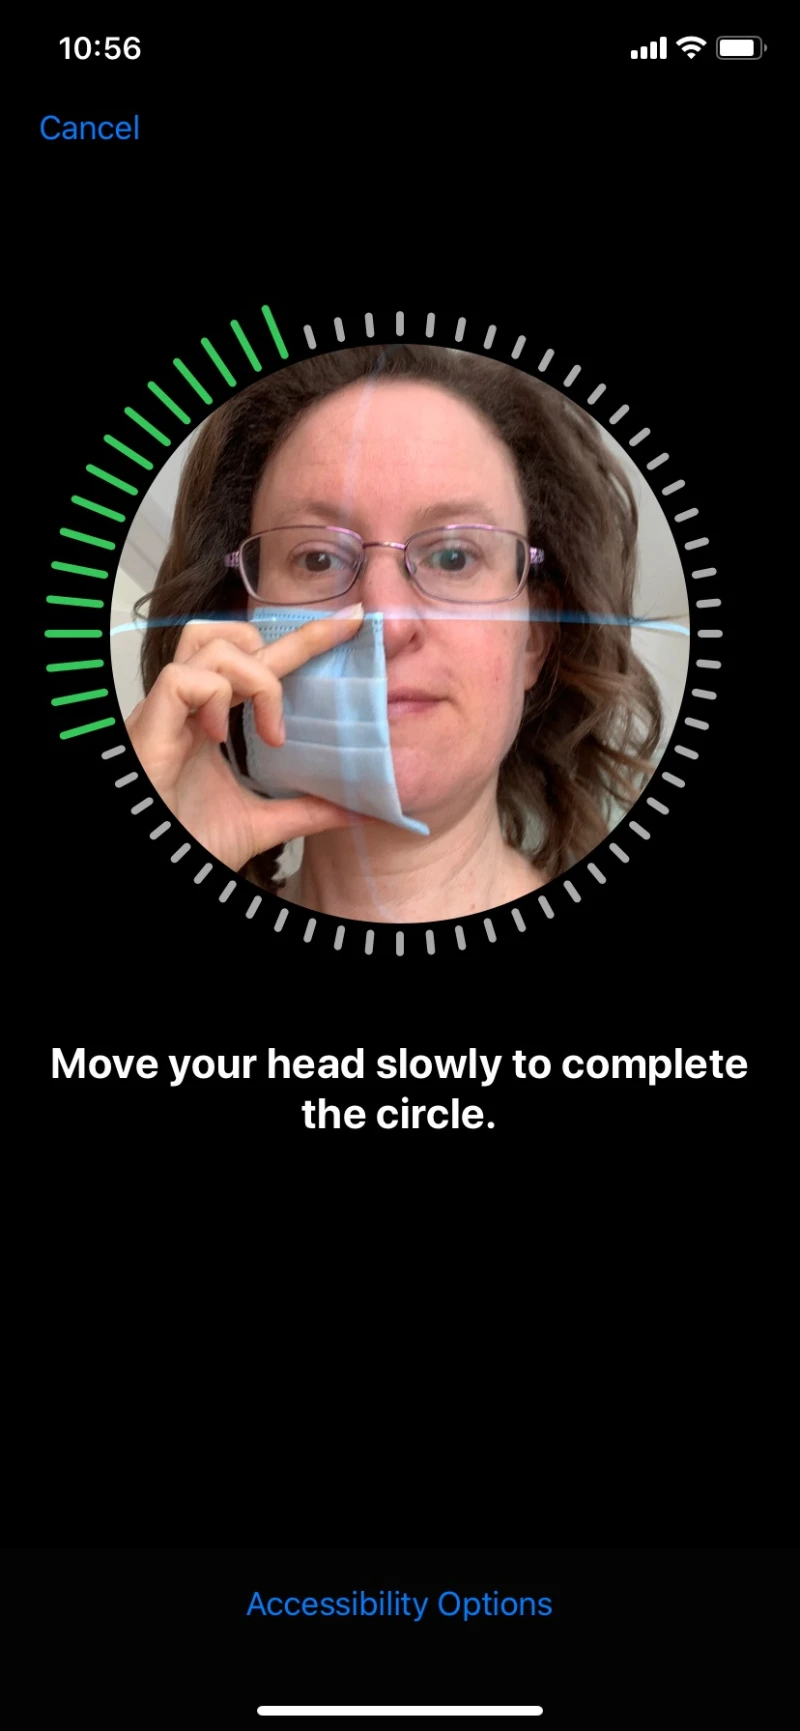 روش استفاده از فیس آیدی / Face ID برای باز کردن قفل آیفون در هنگام پوشیدن ماسک صورت